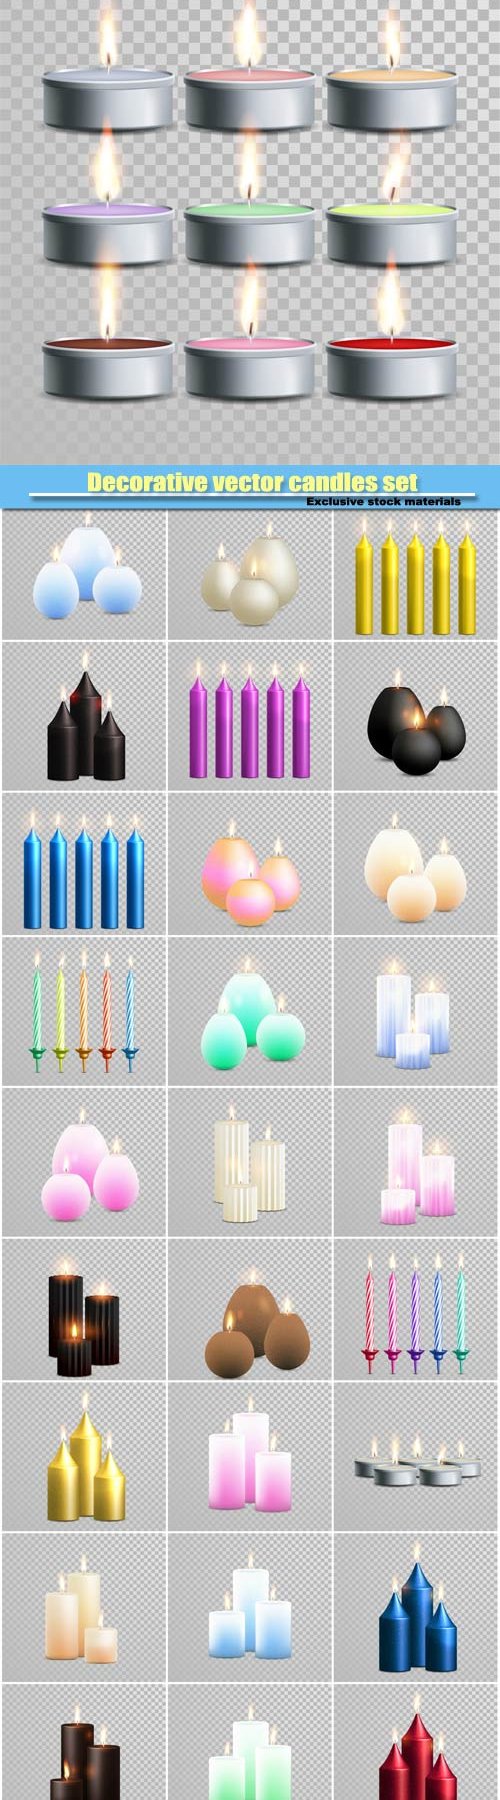 Decorative vector candles set